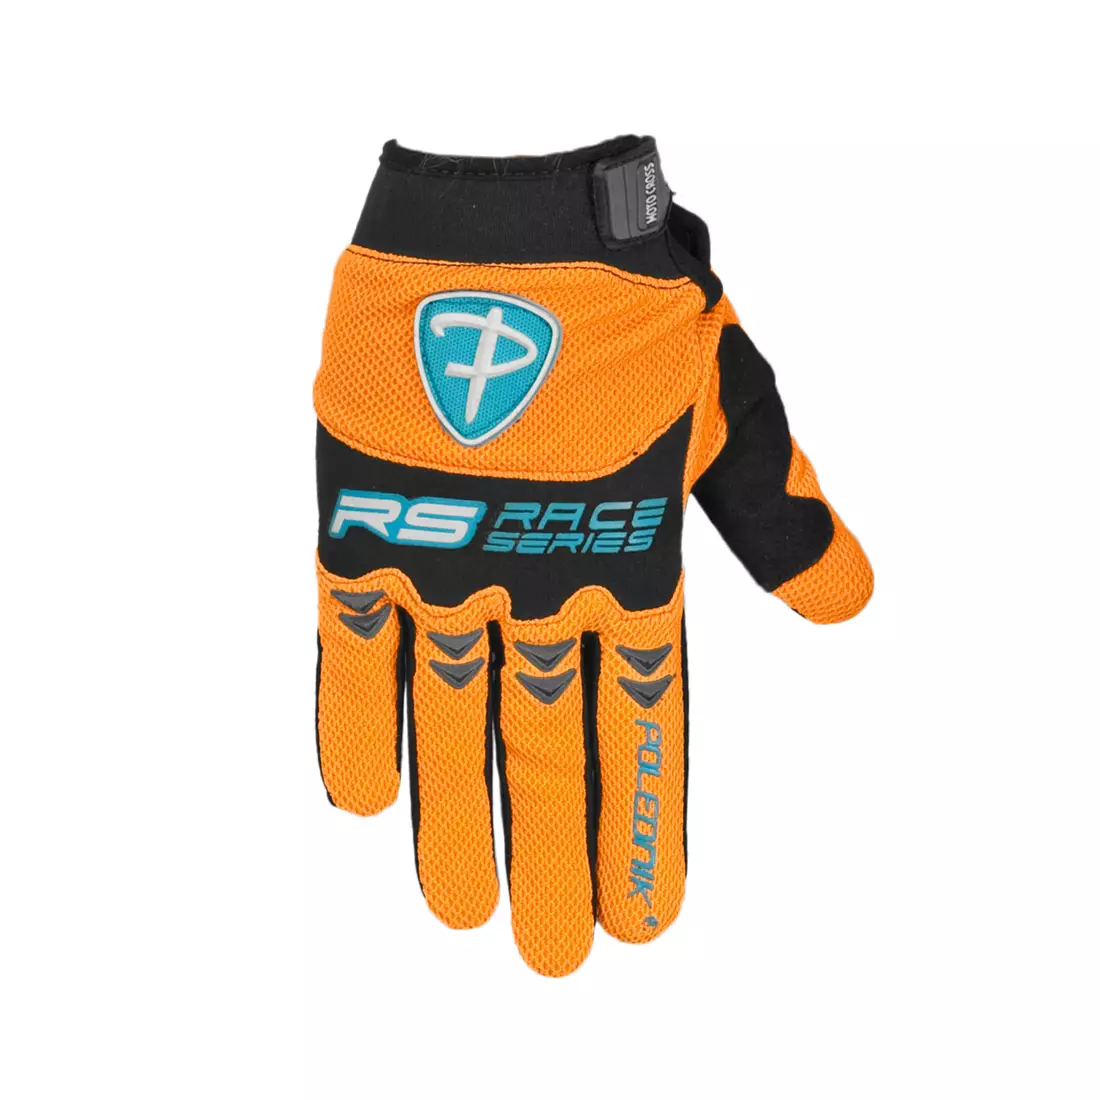 POLEDNIK MX gloves, color: orange